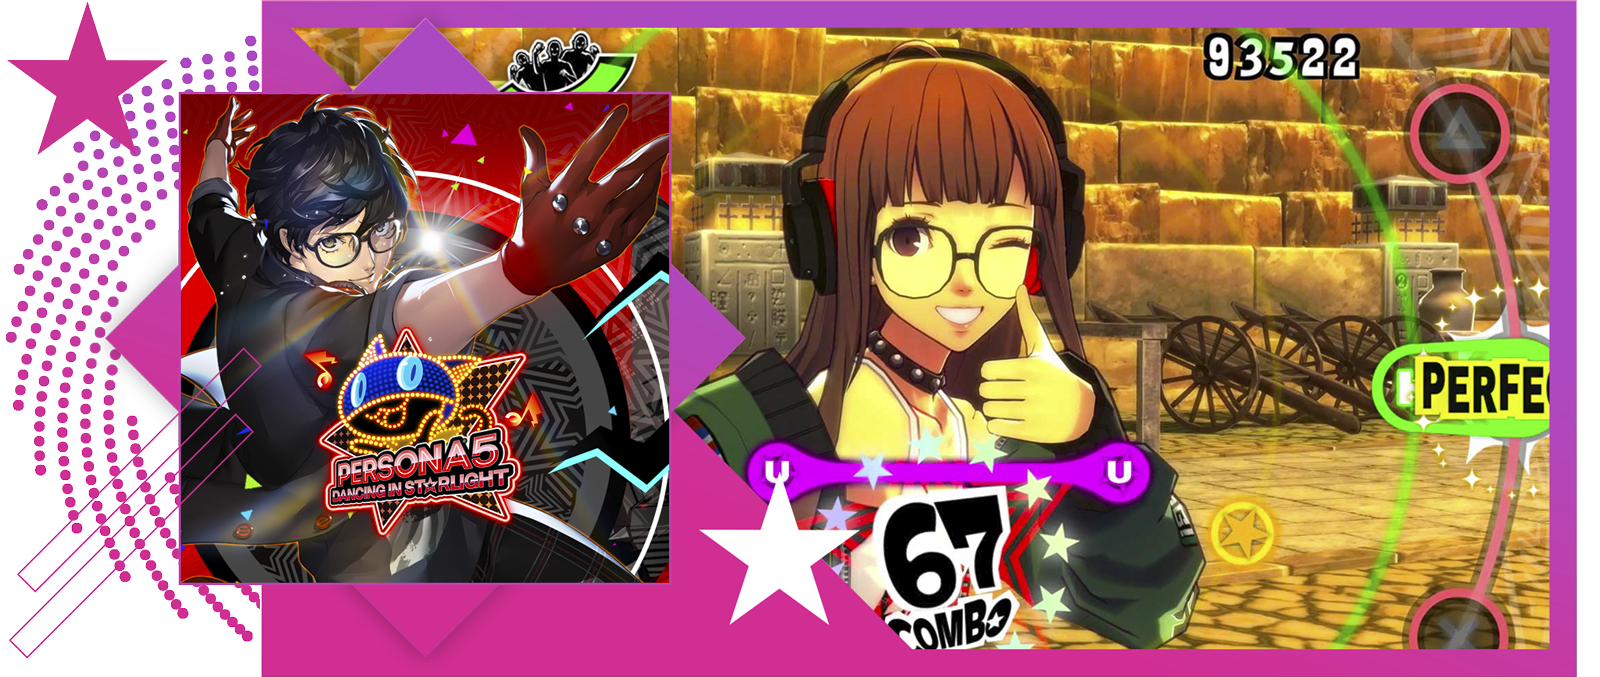 Bild der besten Rhythmusspiele mit den wichtigsten Grafiken und Gameplay-Elementen von Persona 5: Dancing in Starlight.